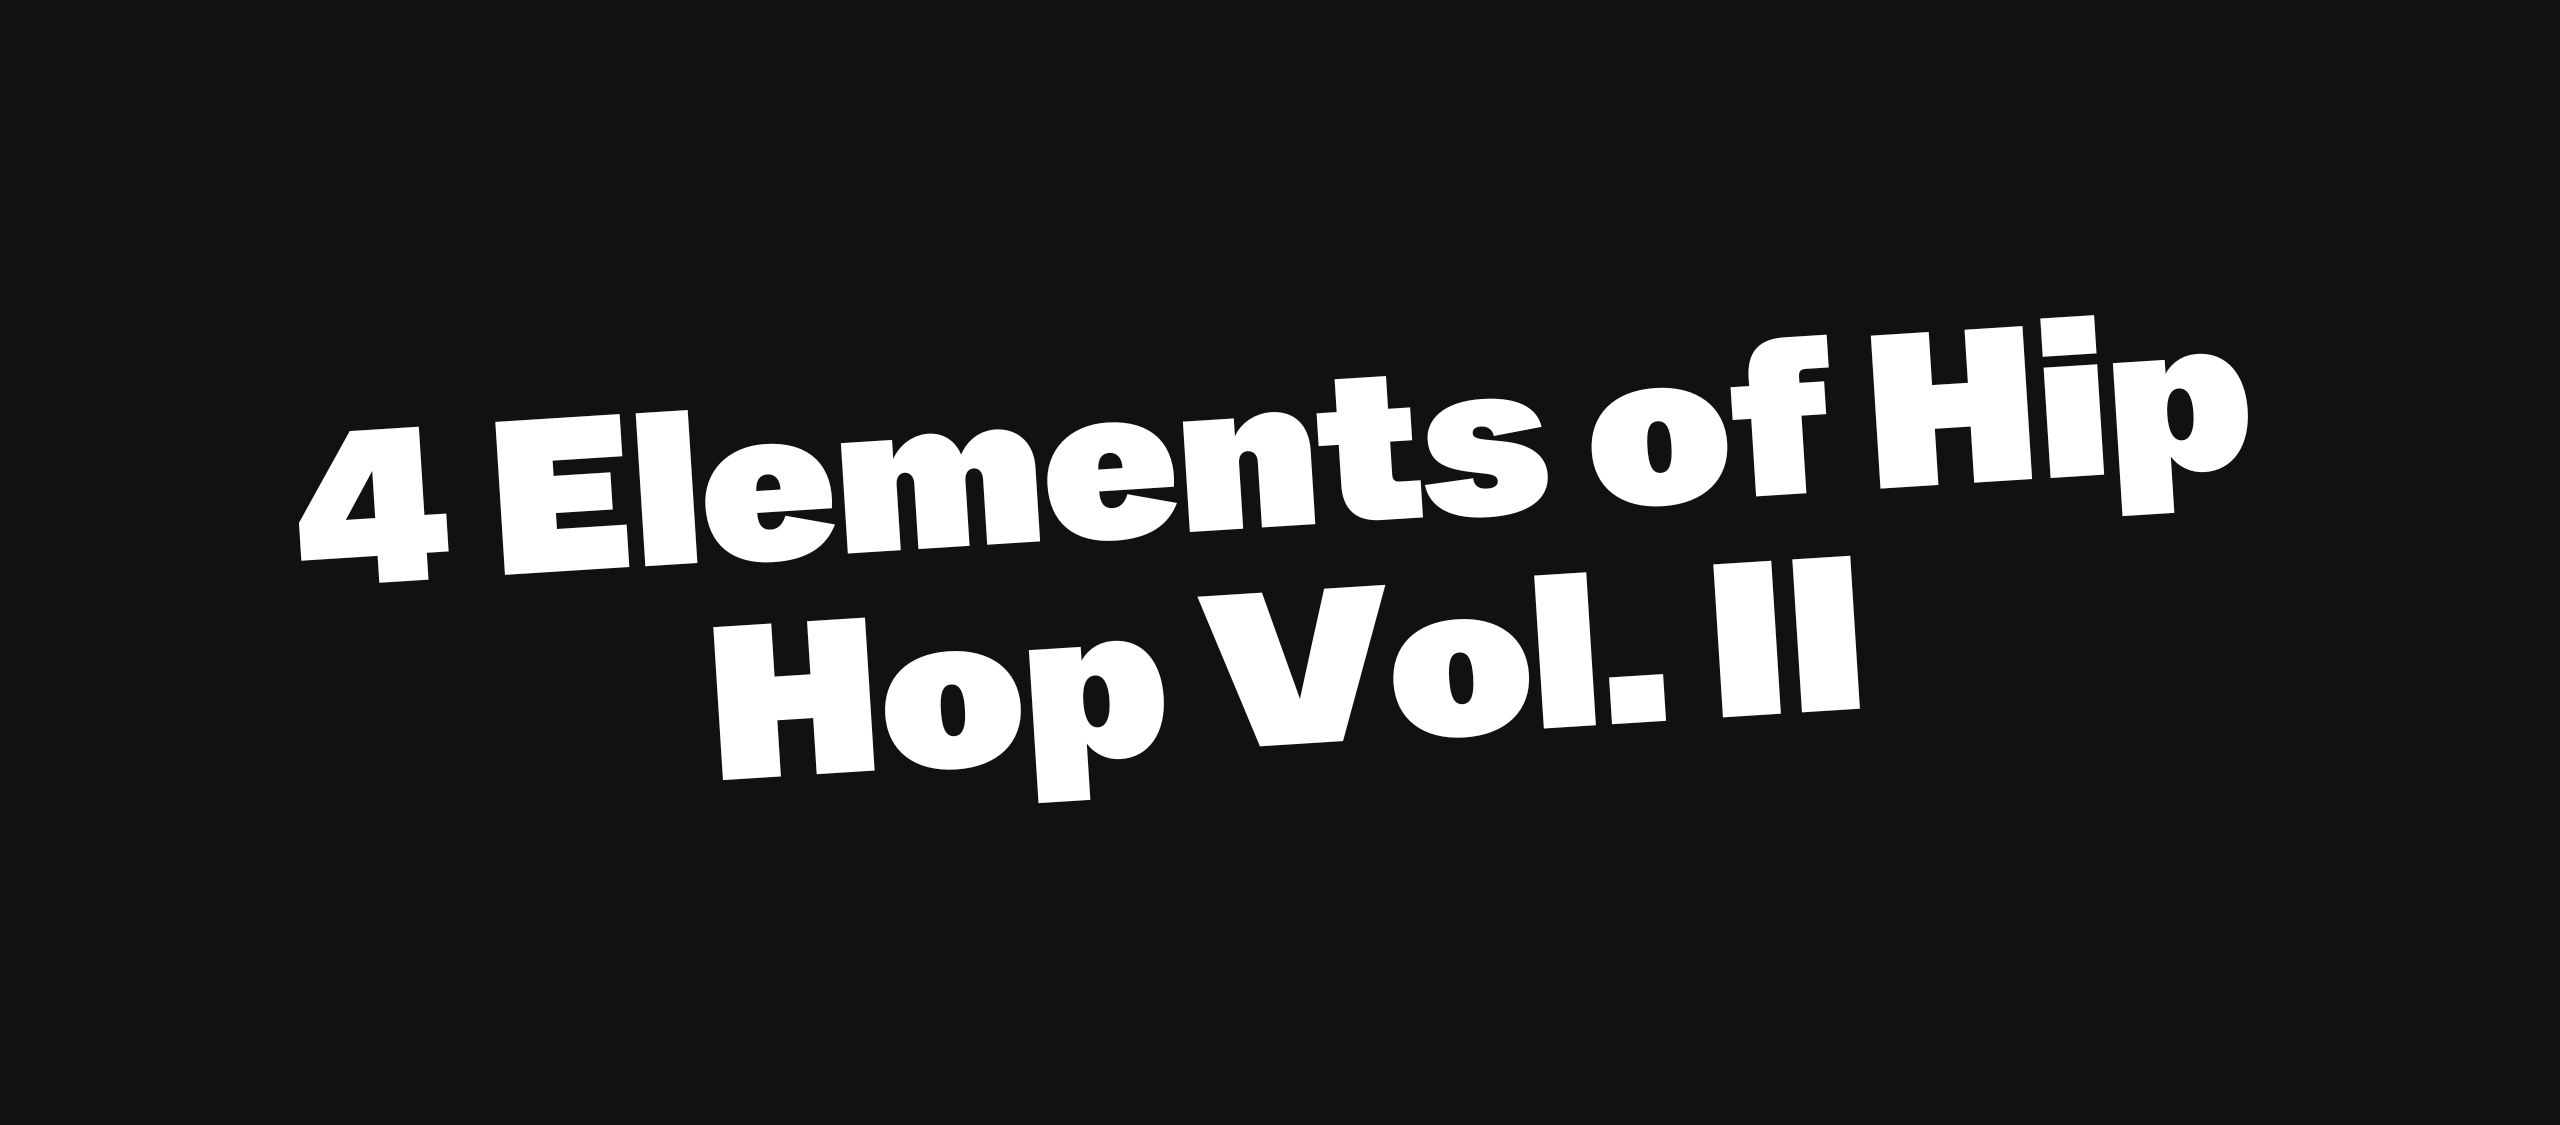 4 Elements of Hip Hop Vol. II